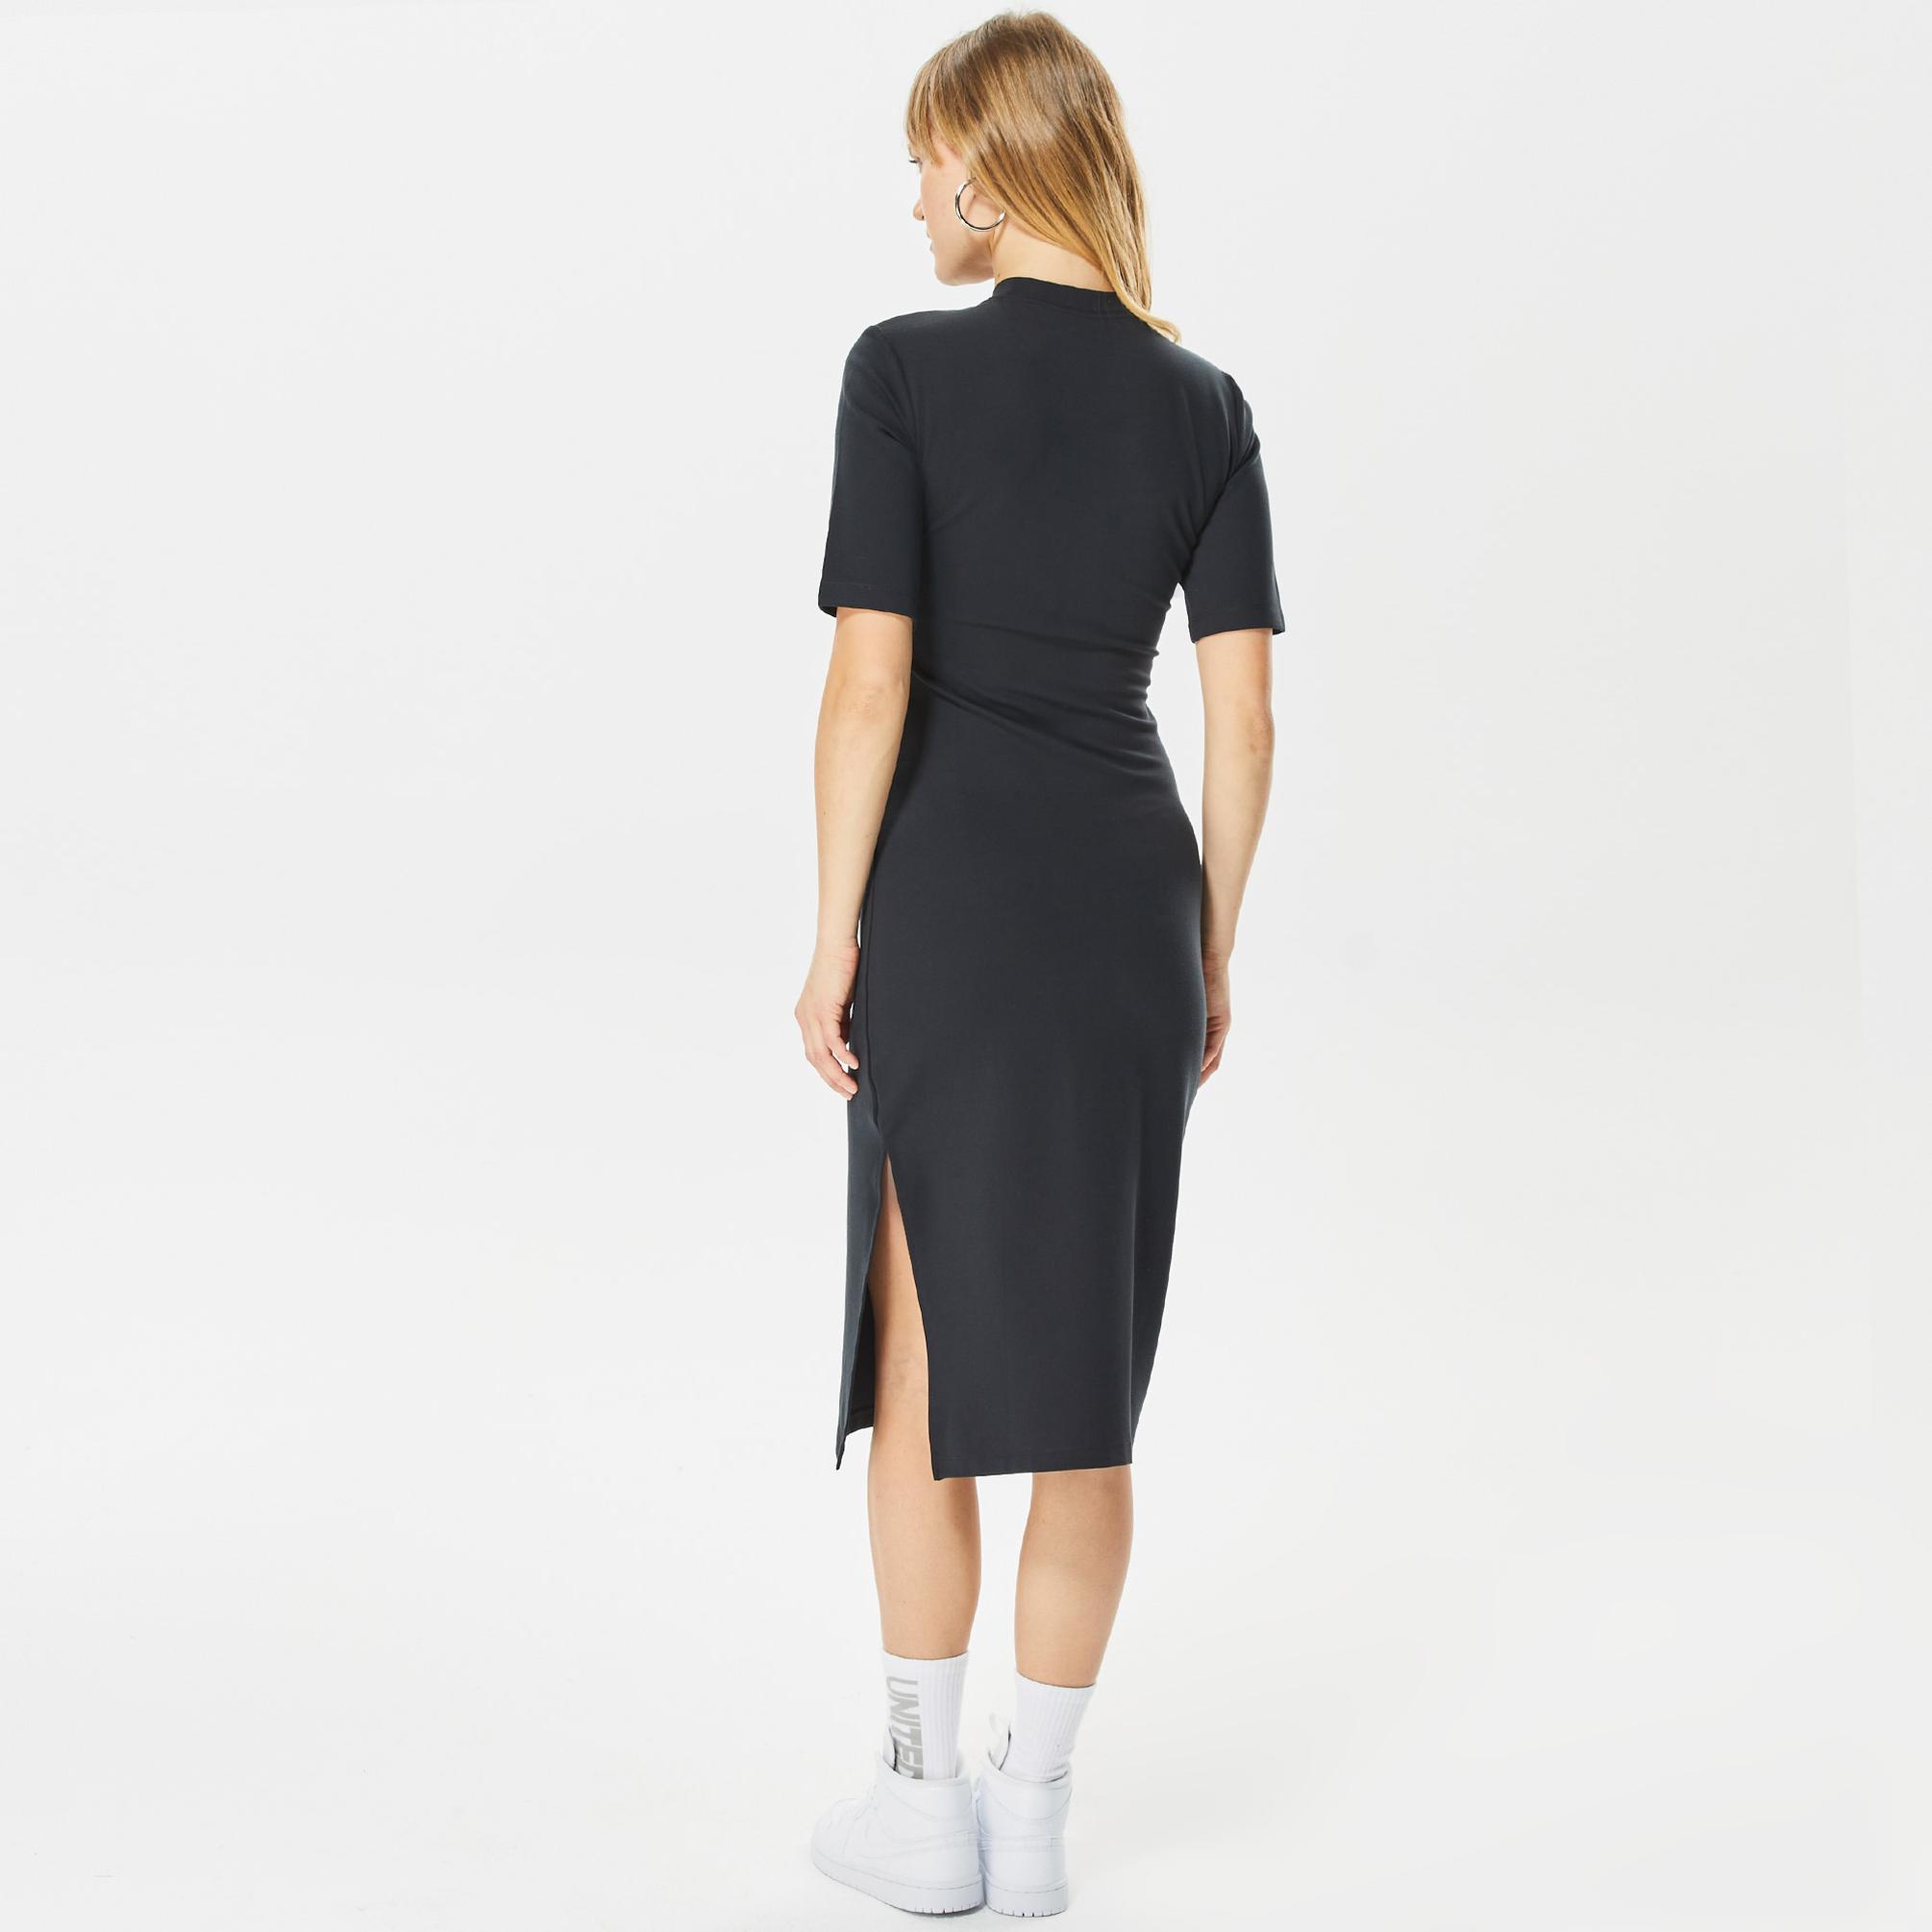  Nike Sportswear Essential Kadın Siyah Elbise